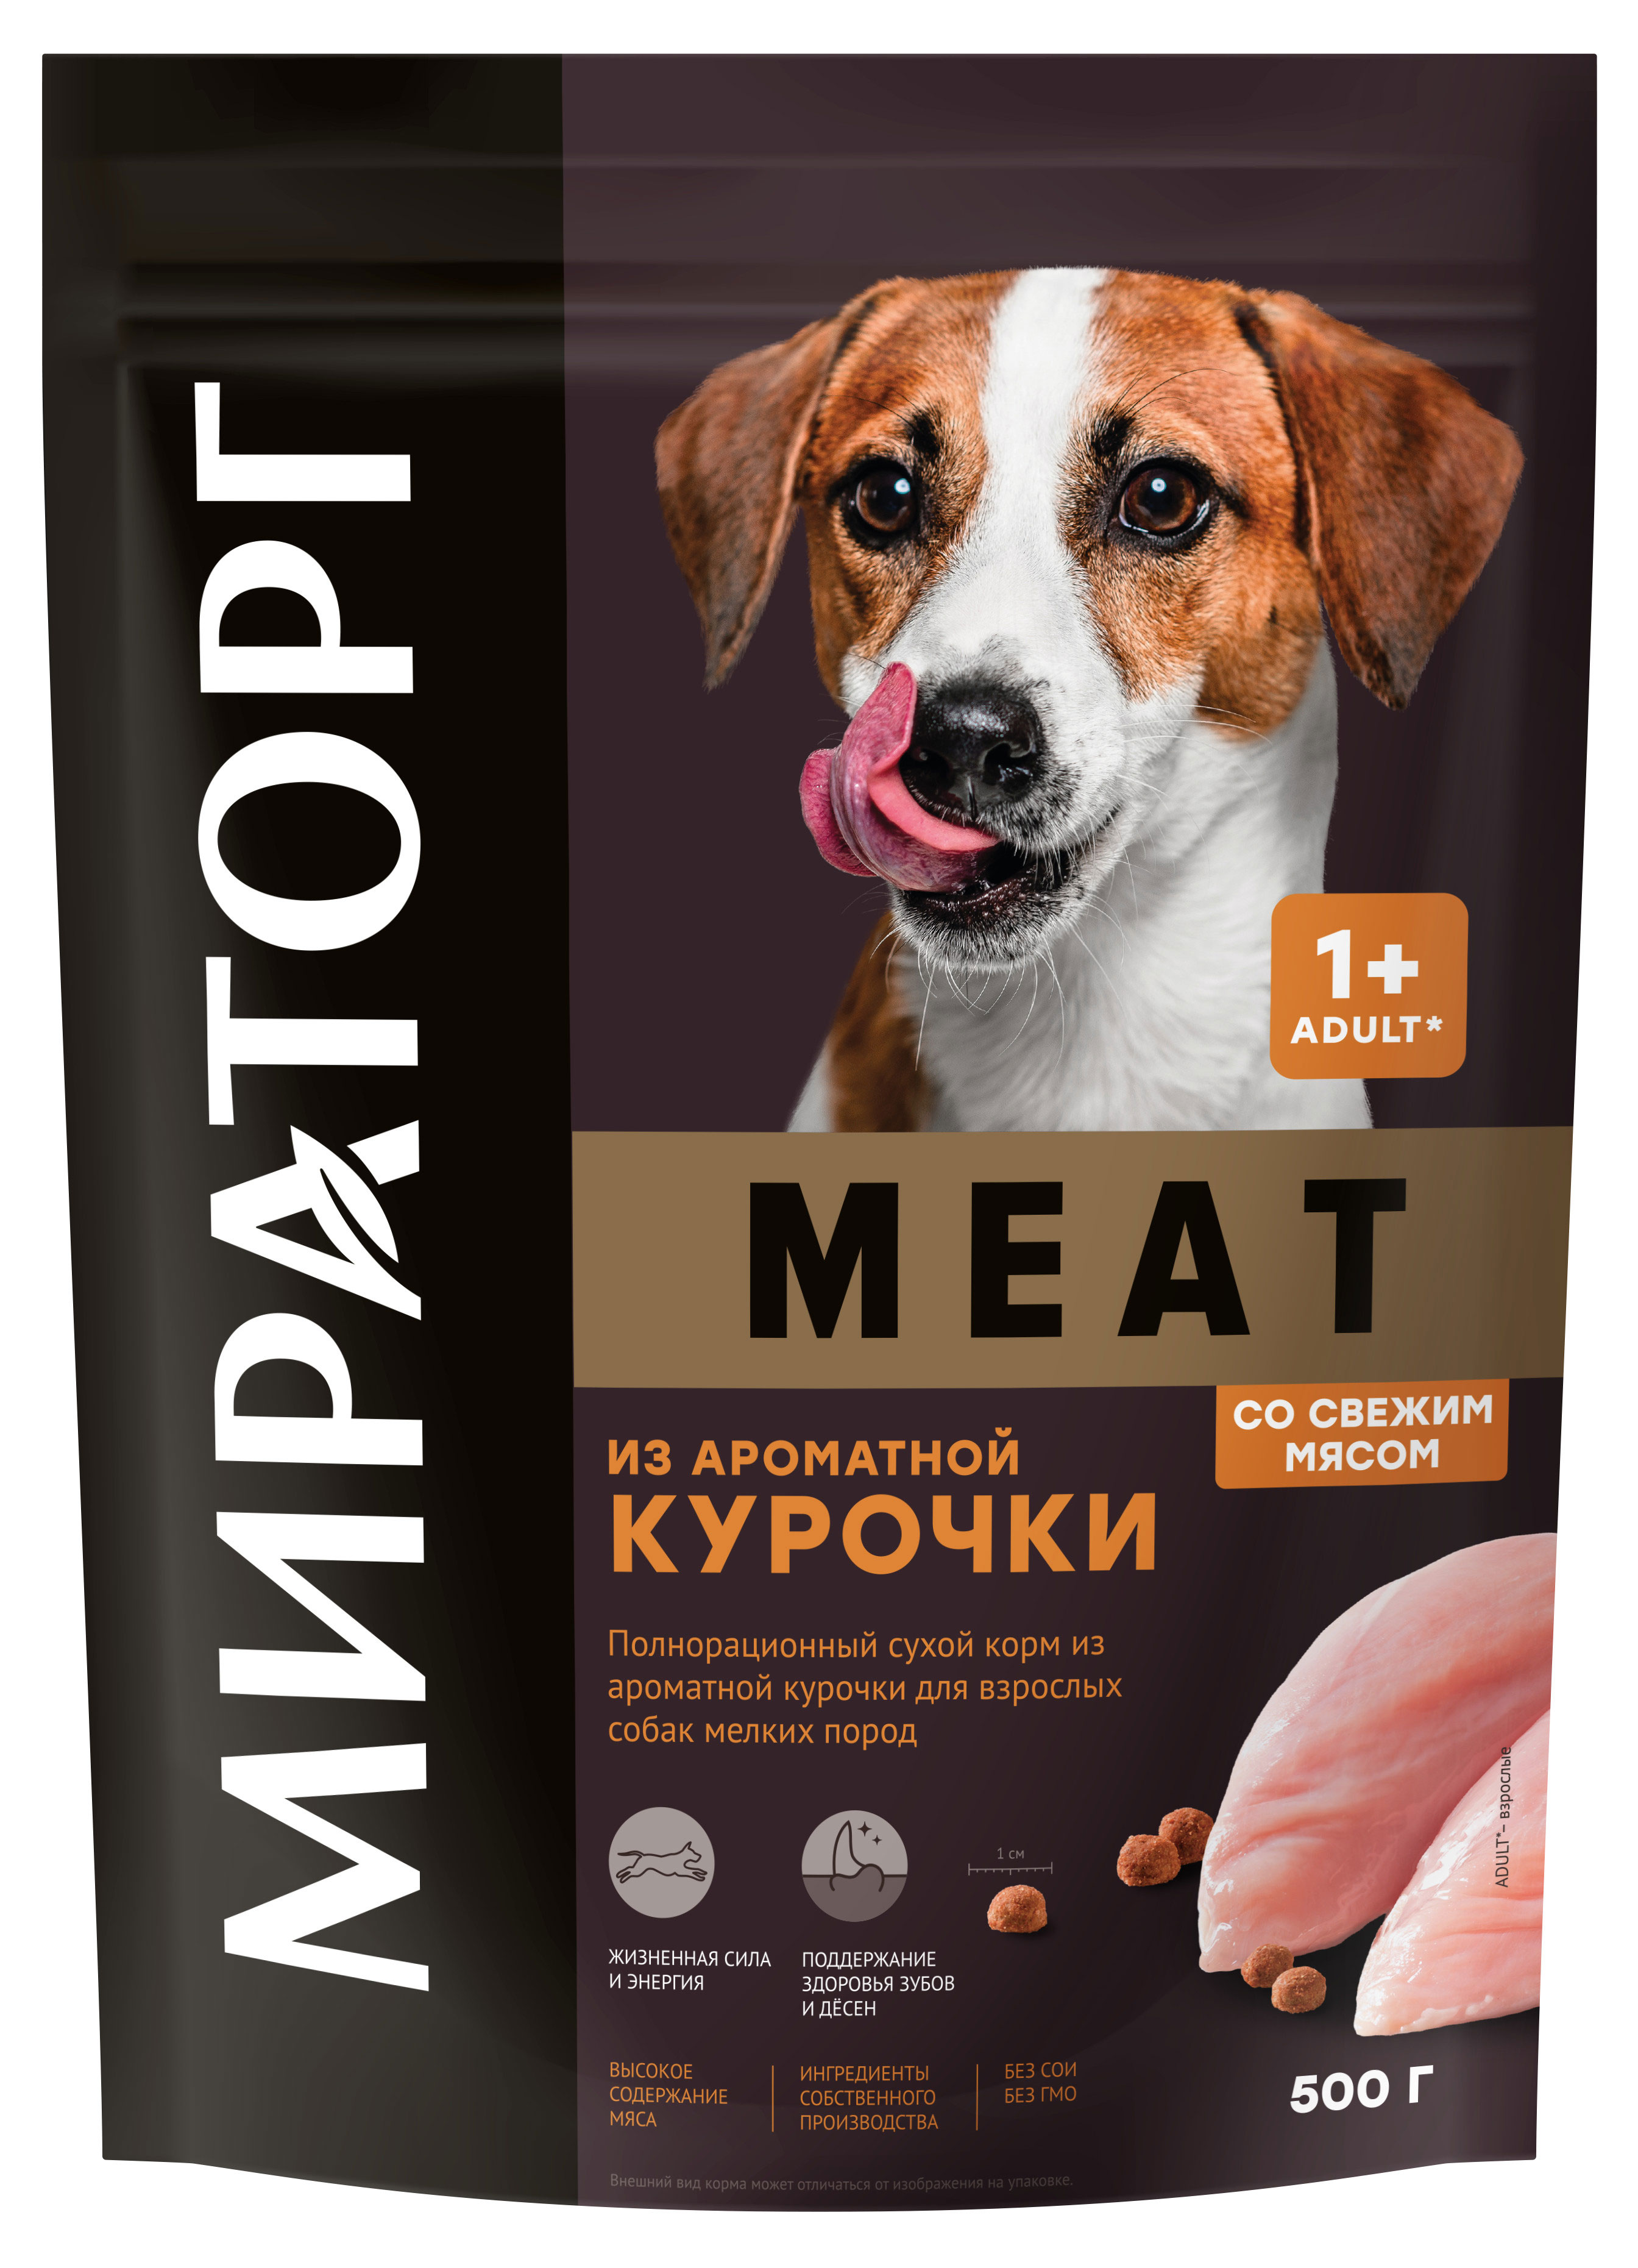 Сухой корм для собак мелких пород «Мираторг» Winner MEAT из ароматной курочки, 500 г